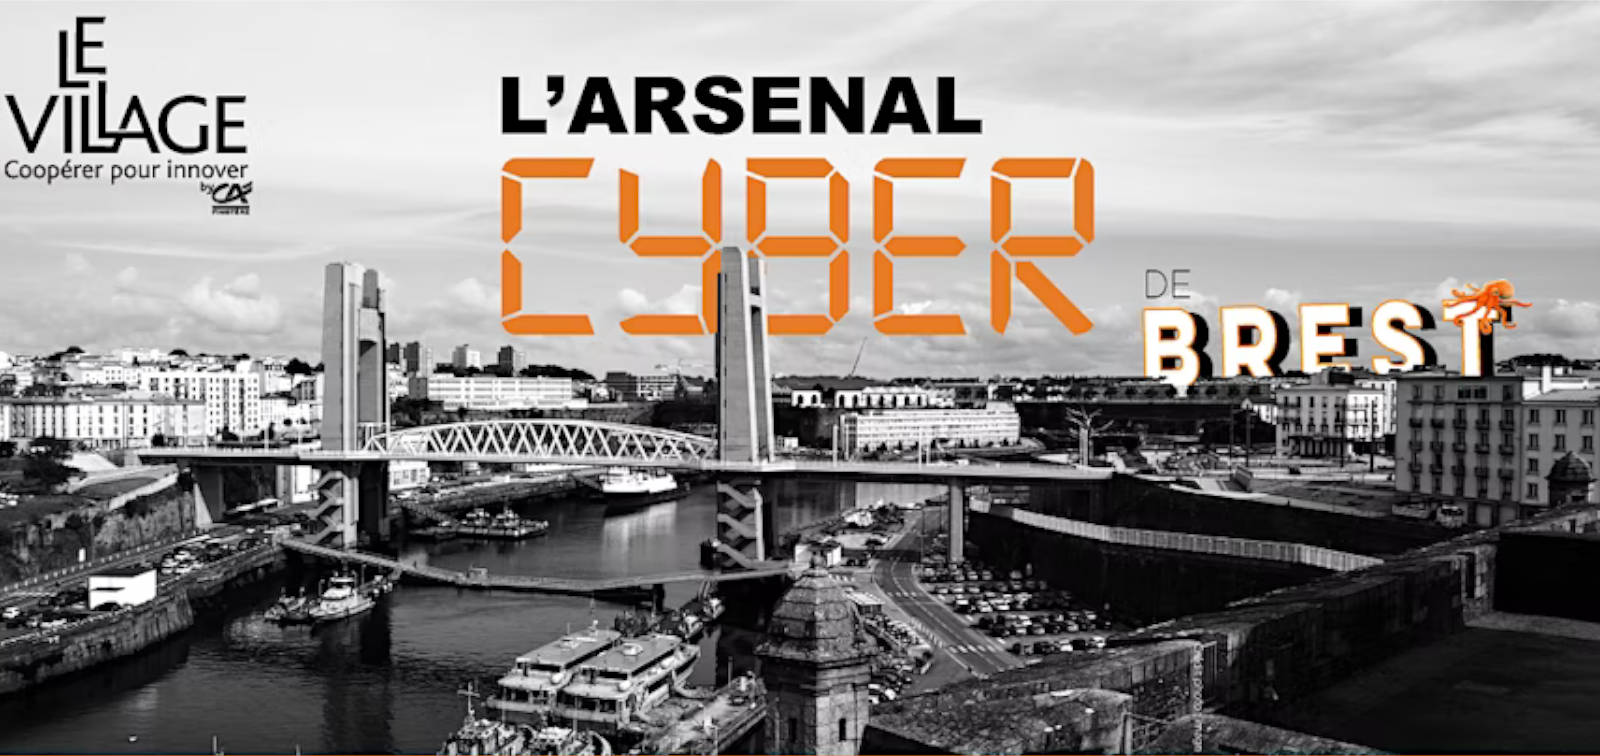 DIATEAM will participate in Arsenal Cyber de Brest event on March 28th